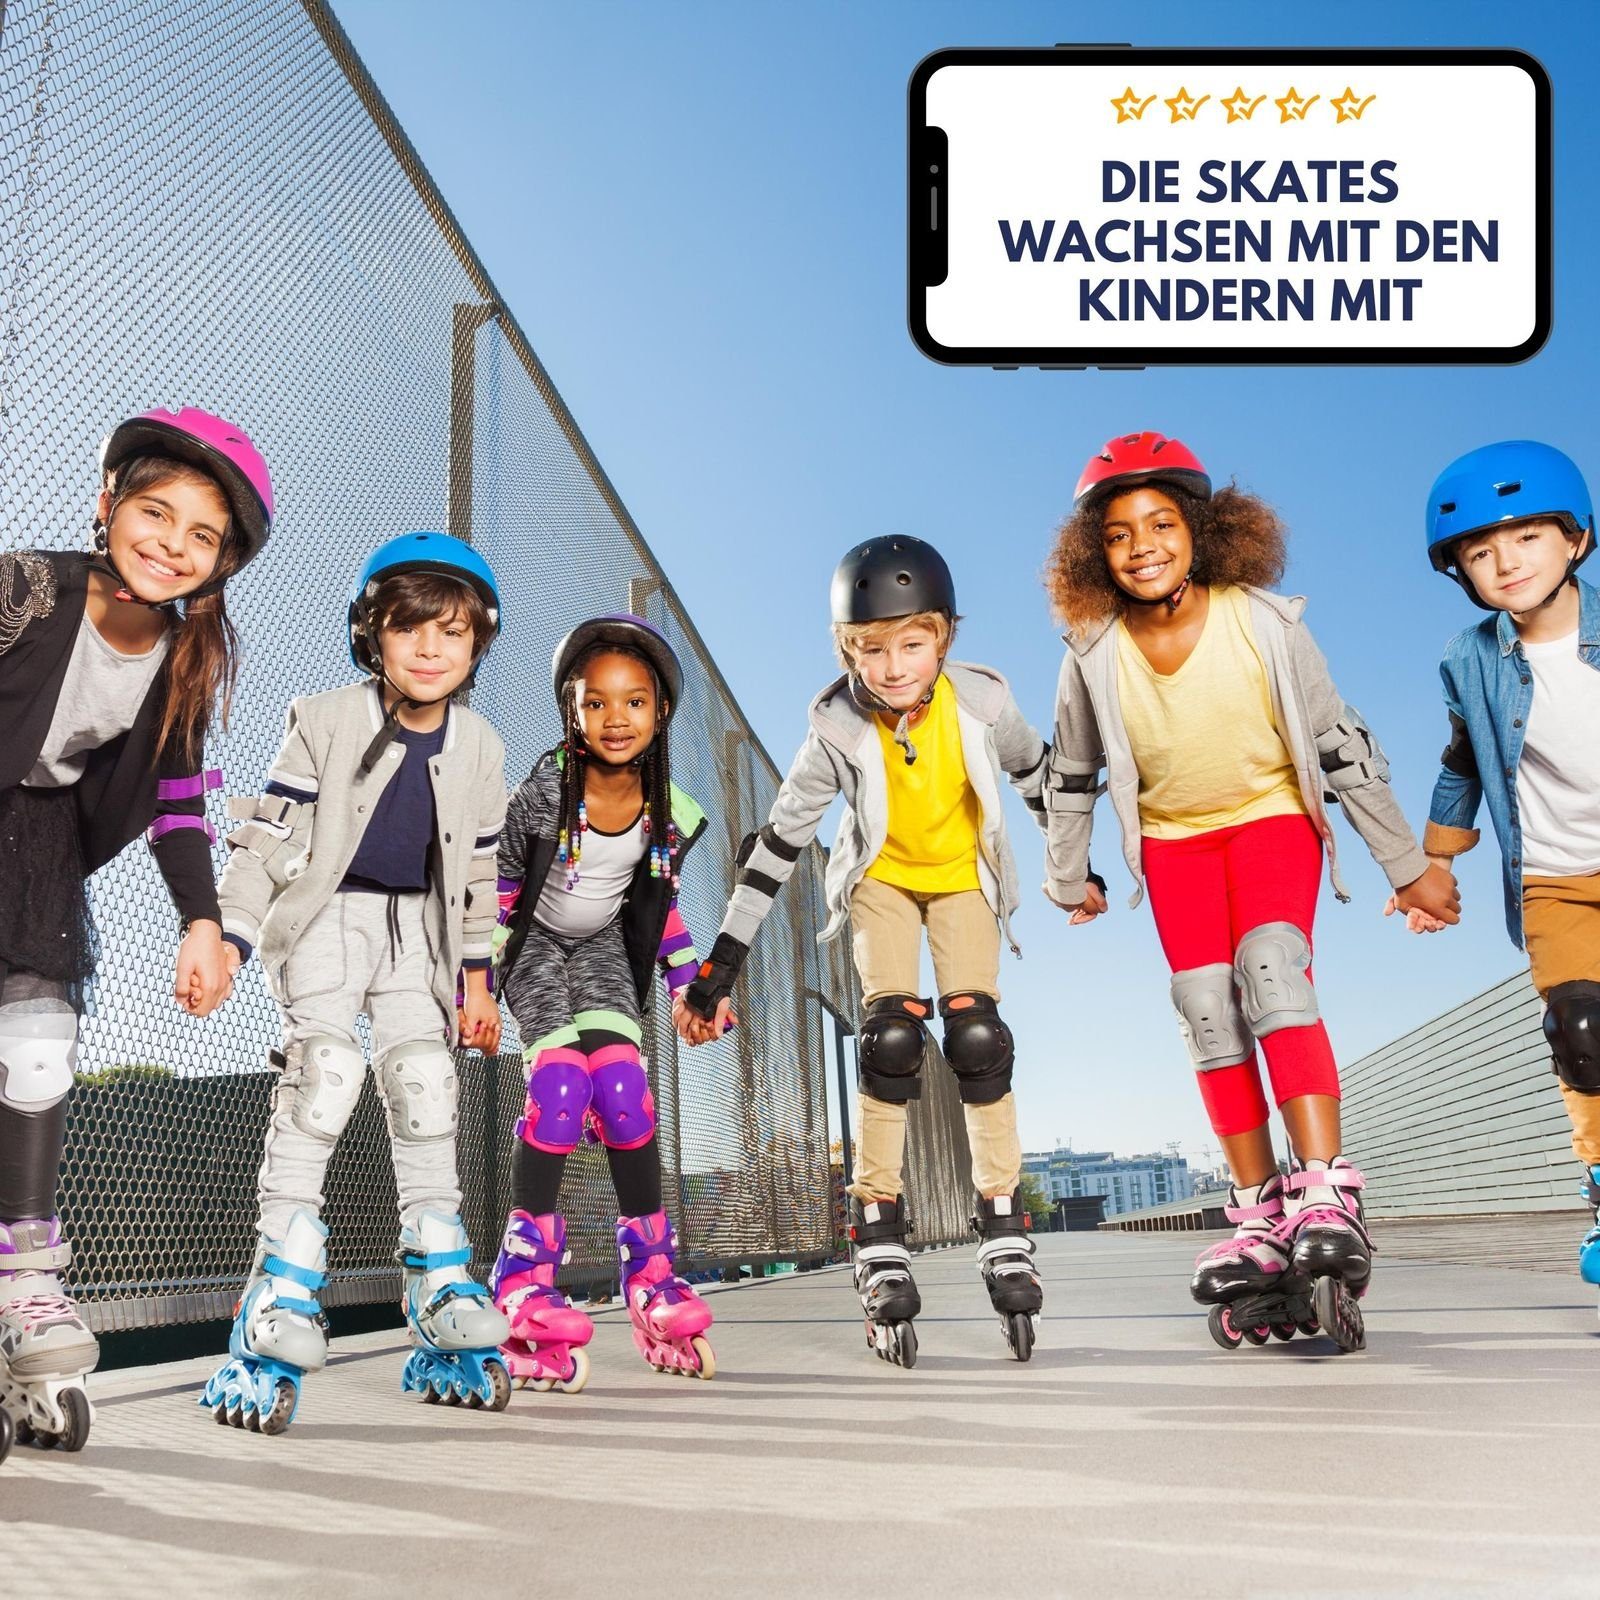 Best Inlineskates Skates pink/schwarz 7, Sporting pink ABEC oder grün, verstellbar, Inline türkisblau Kinder,